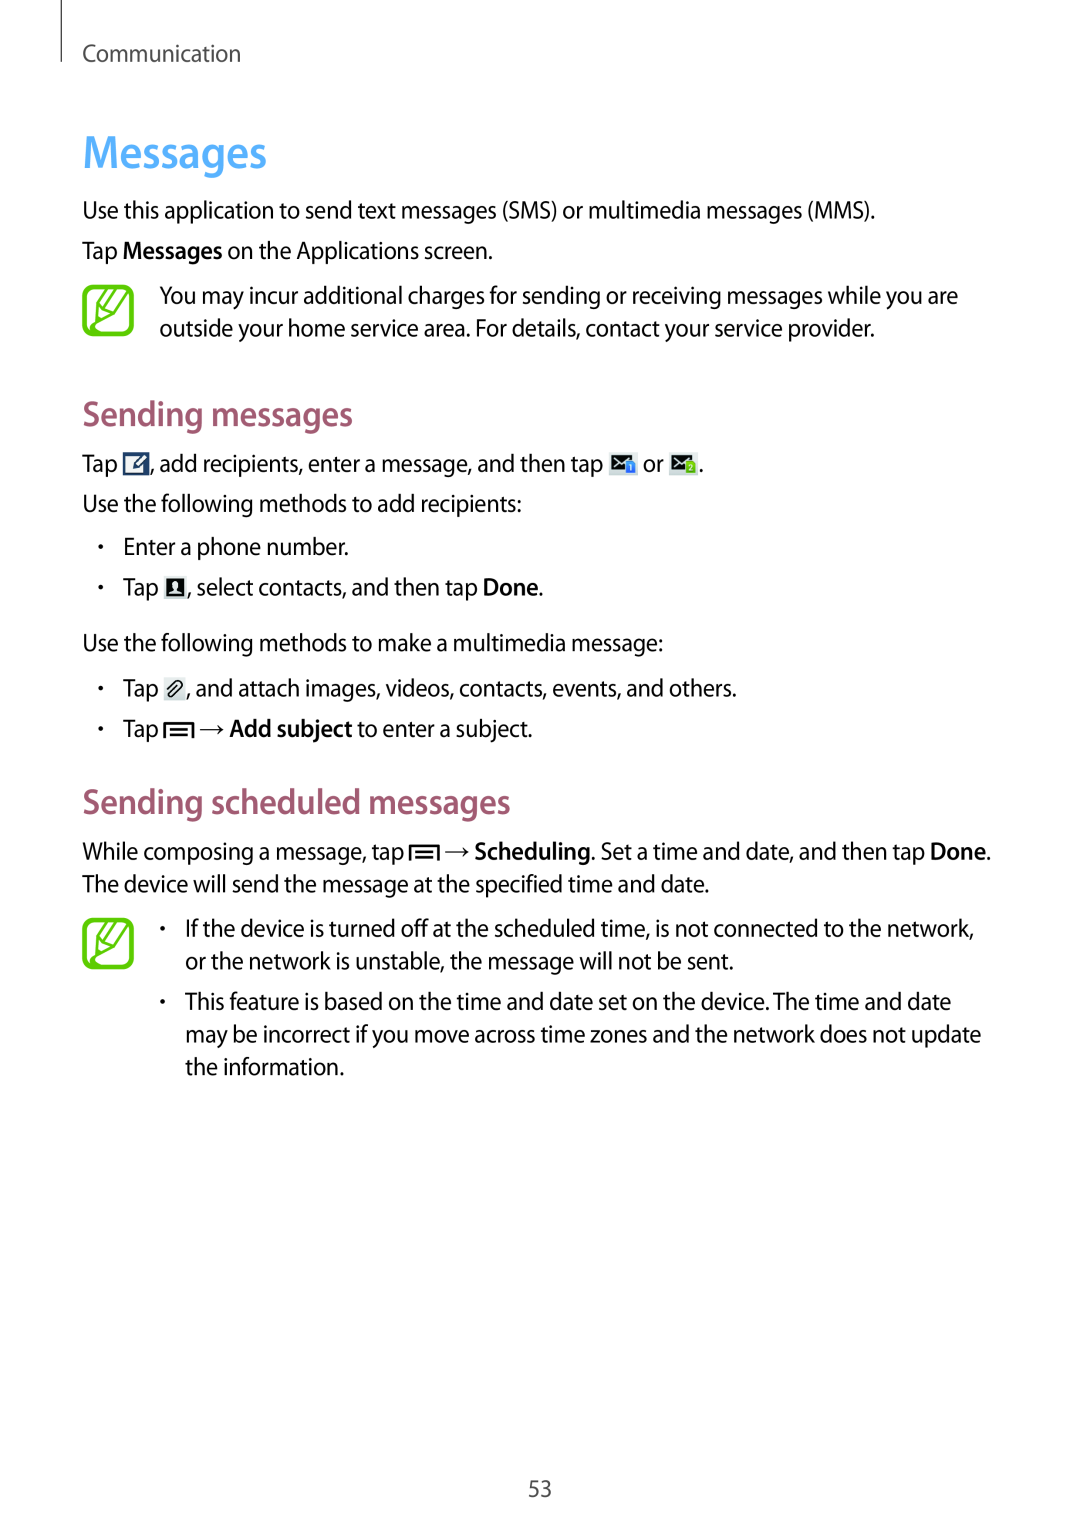 Samsung SM-G7102ZWAXXV, SM-G7102ZDAMID manual Messages, Sending messages, Sending scheduled messages, Communication 